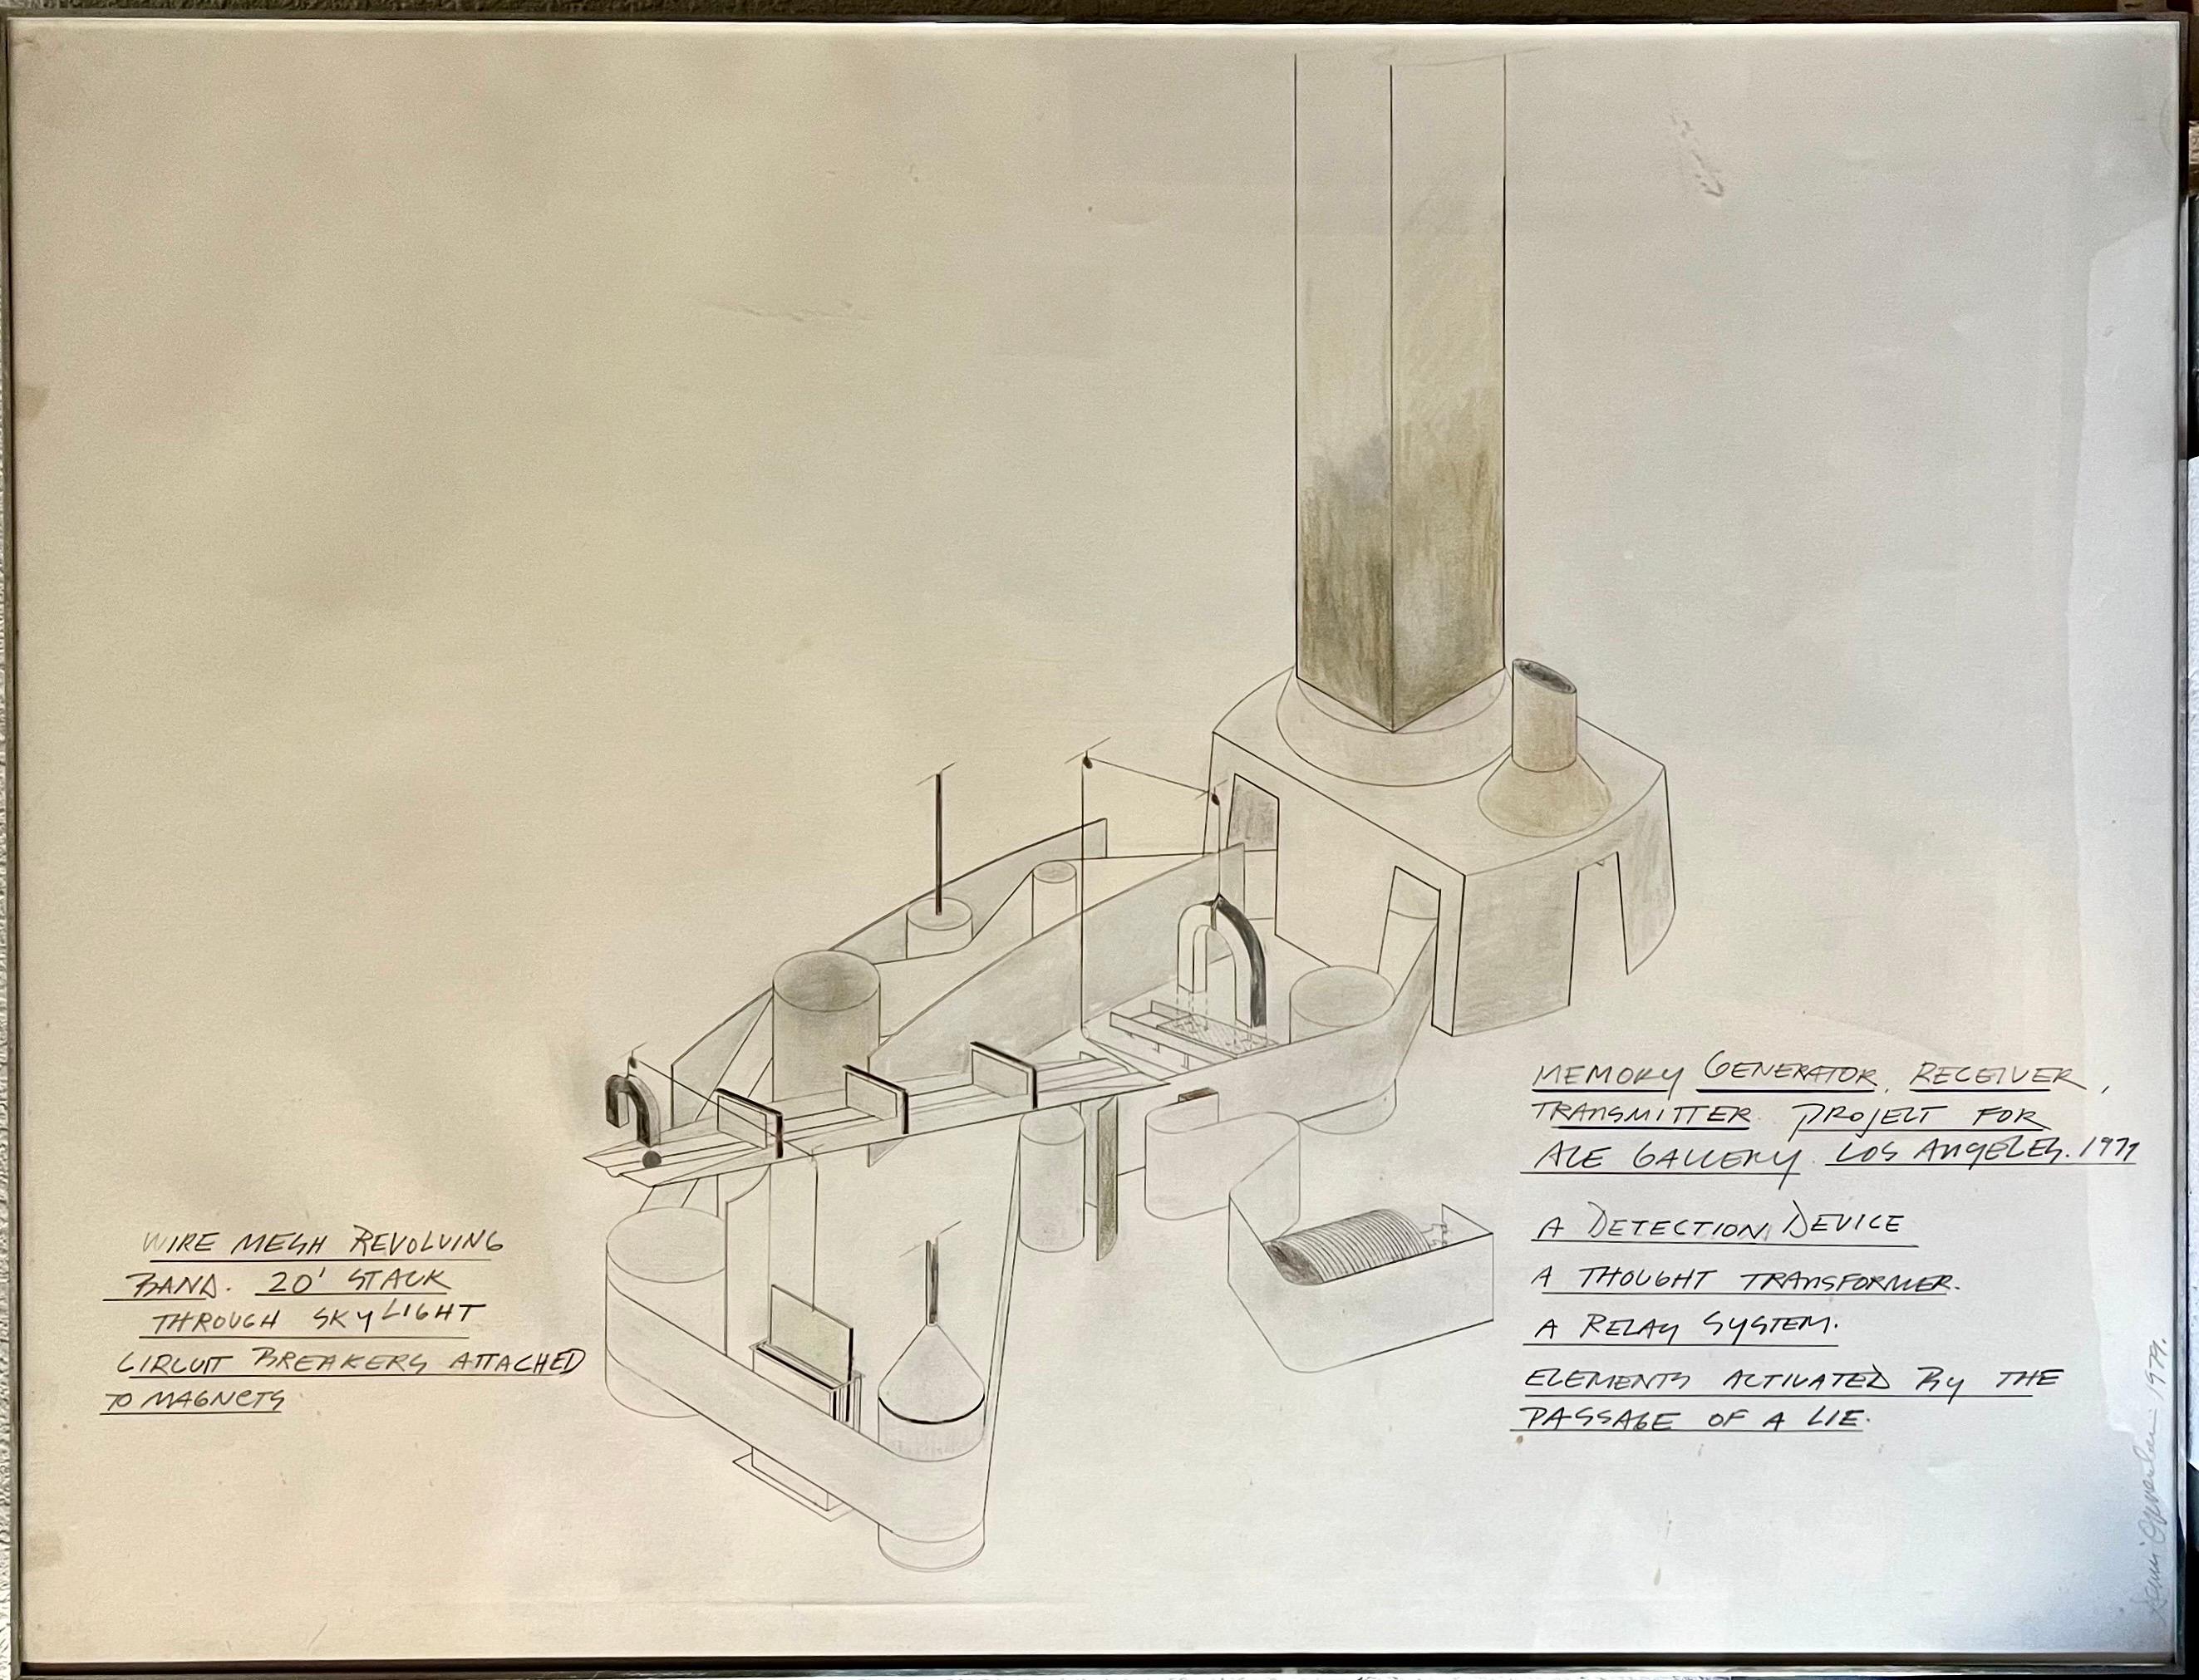 Dennis Oppenheim (1938 - 2011)
Bleistift- und Farbstiftzeichnung auf Papier, 
'Memory Generator Receiver; Transmitter Projekt für die ACE Gallery Los Angeles'.
(eventuell mit Aquarellfarben oder Pigmenten auf Papier gemalt)
Datum: 1979
Signiert: